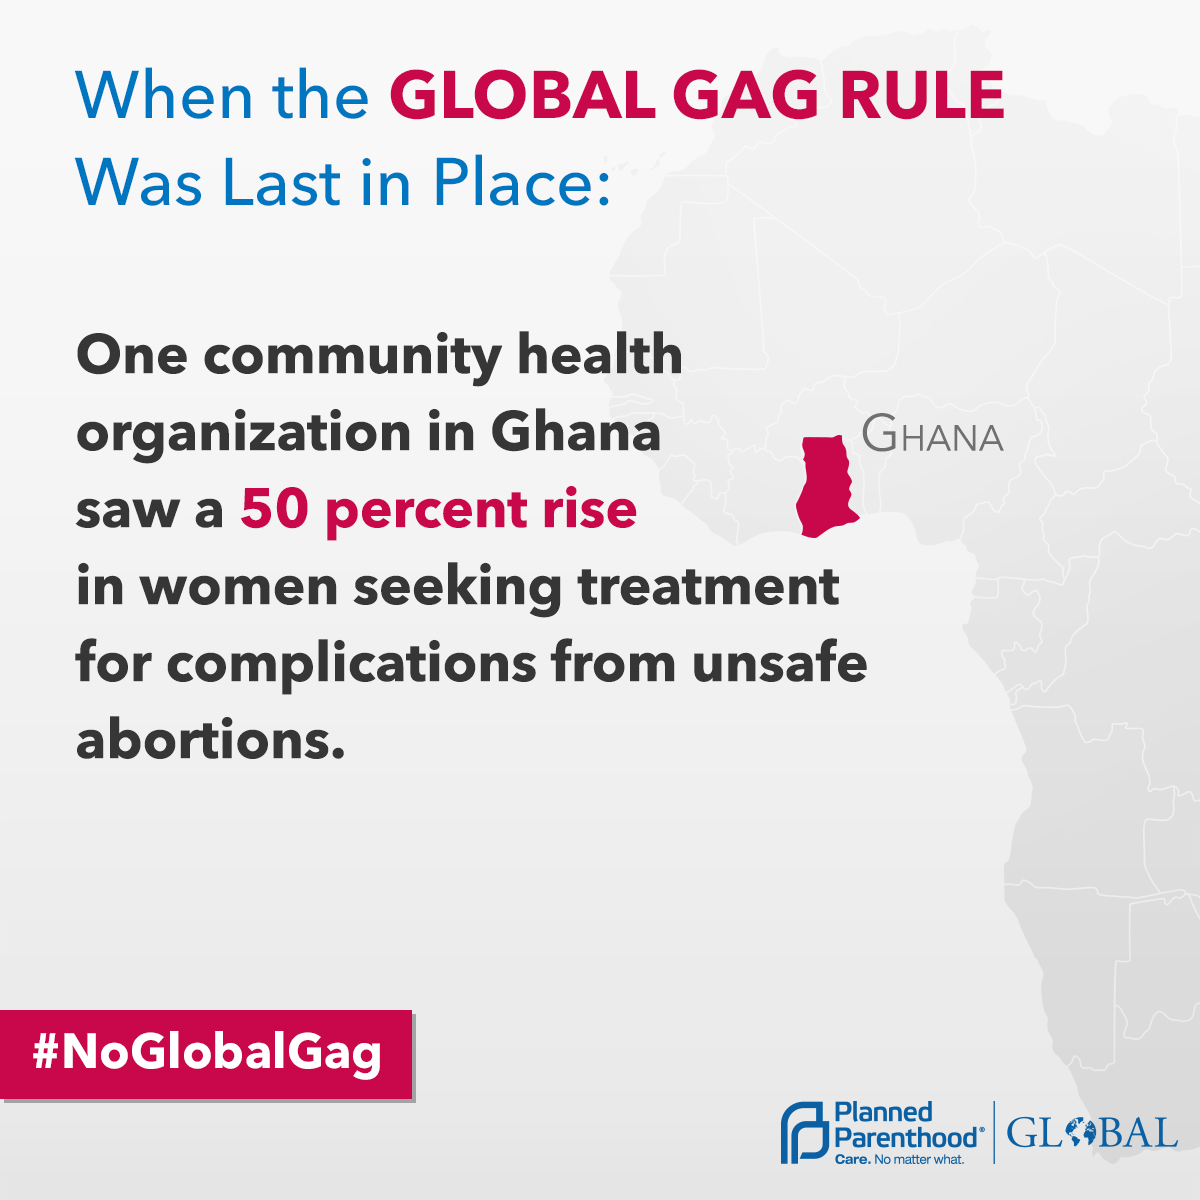 Global Gag Rule and Ghana